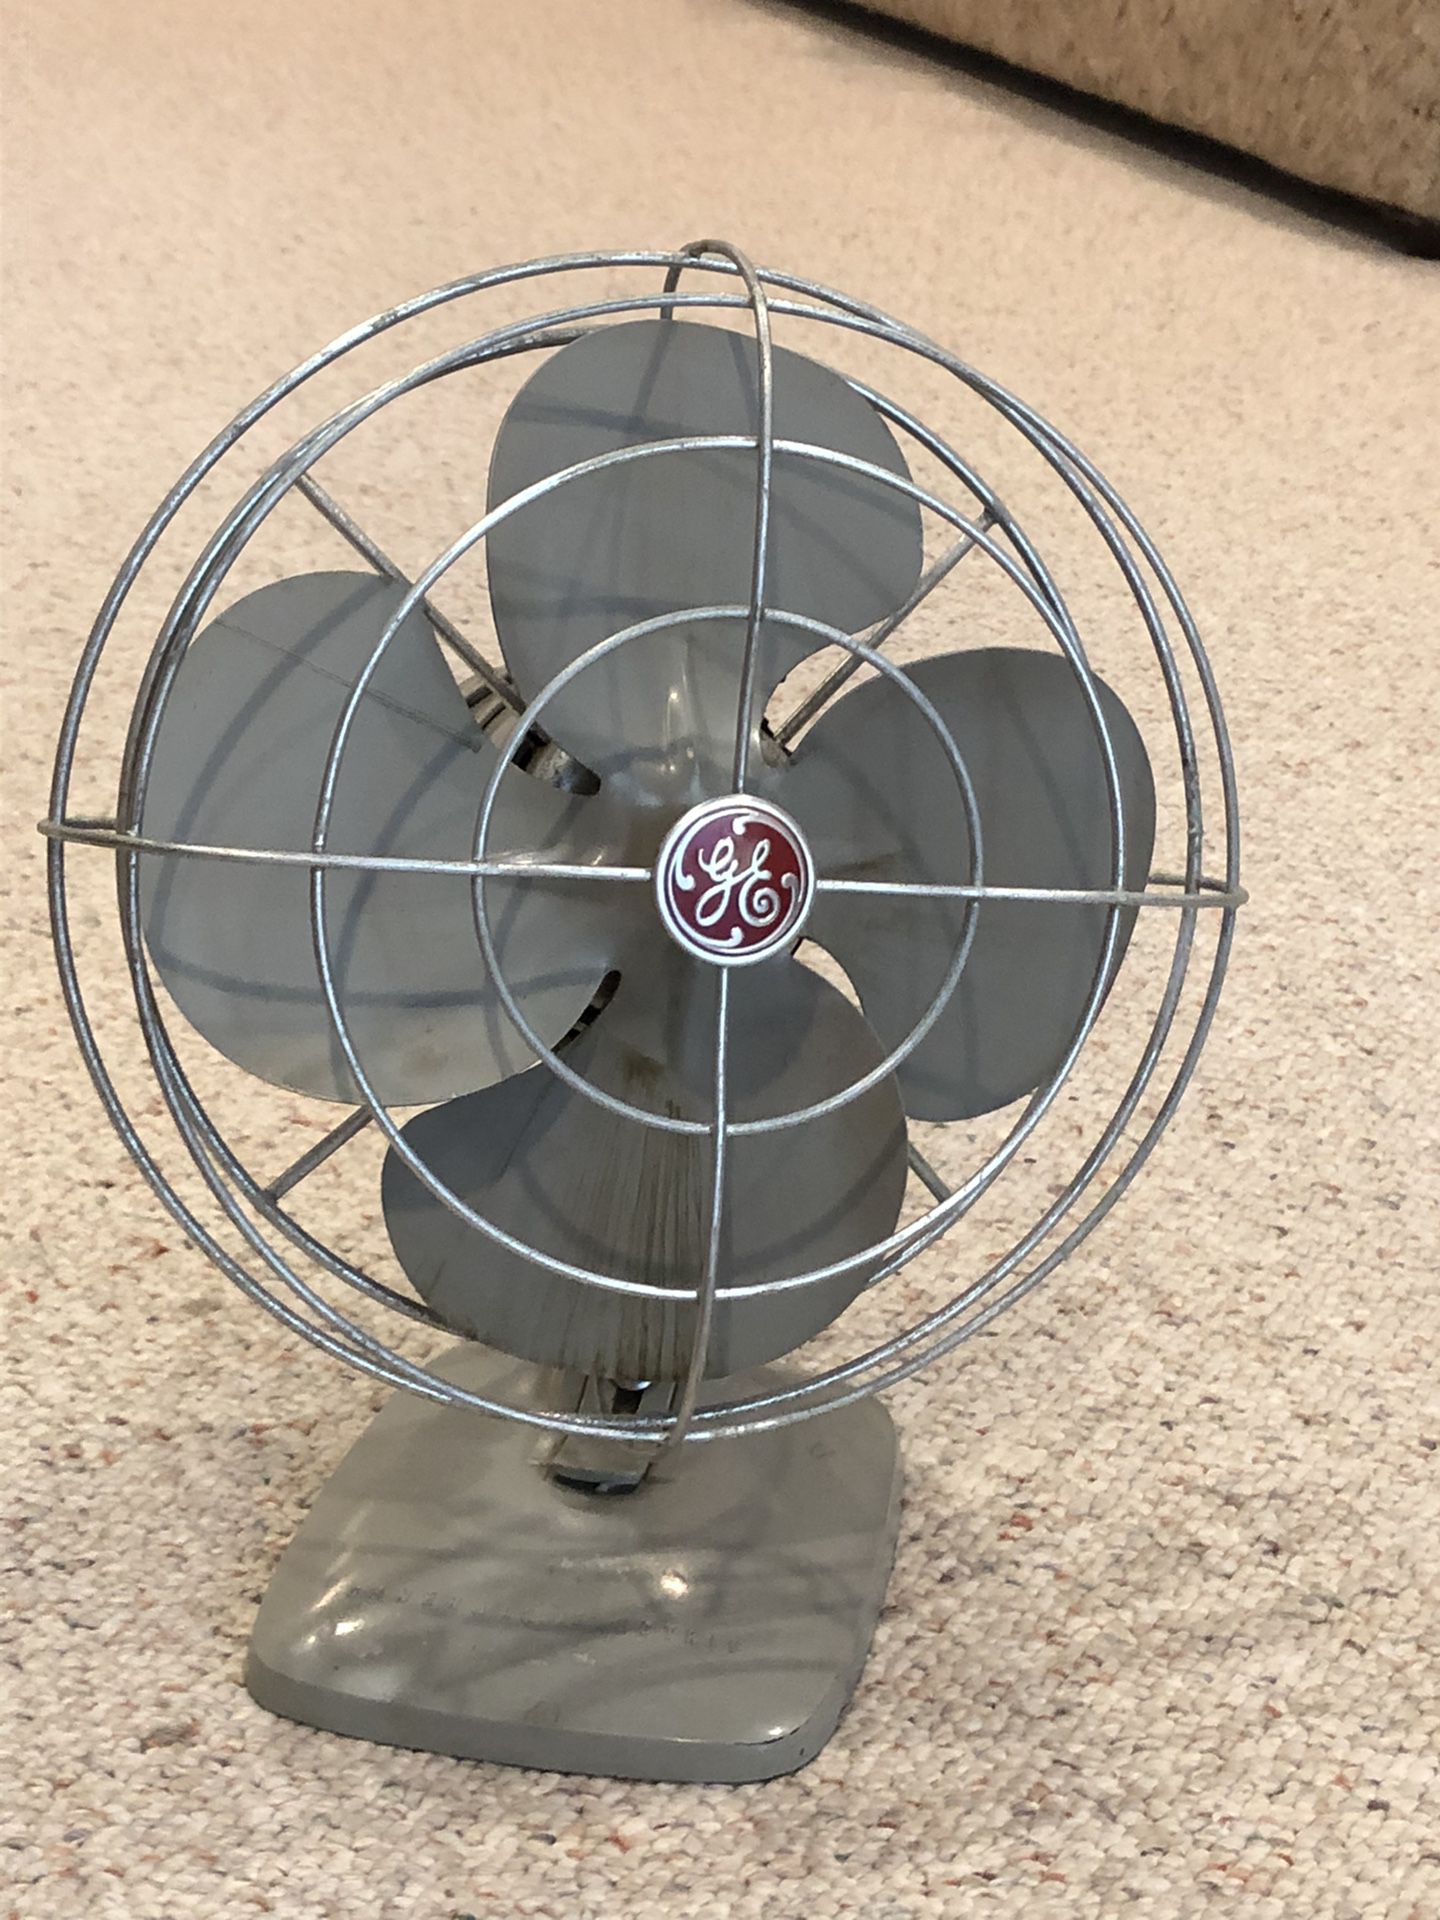 1950 Vintage GE Oscillating Tabletop Fan